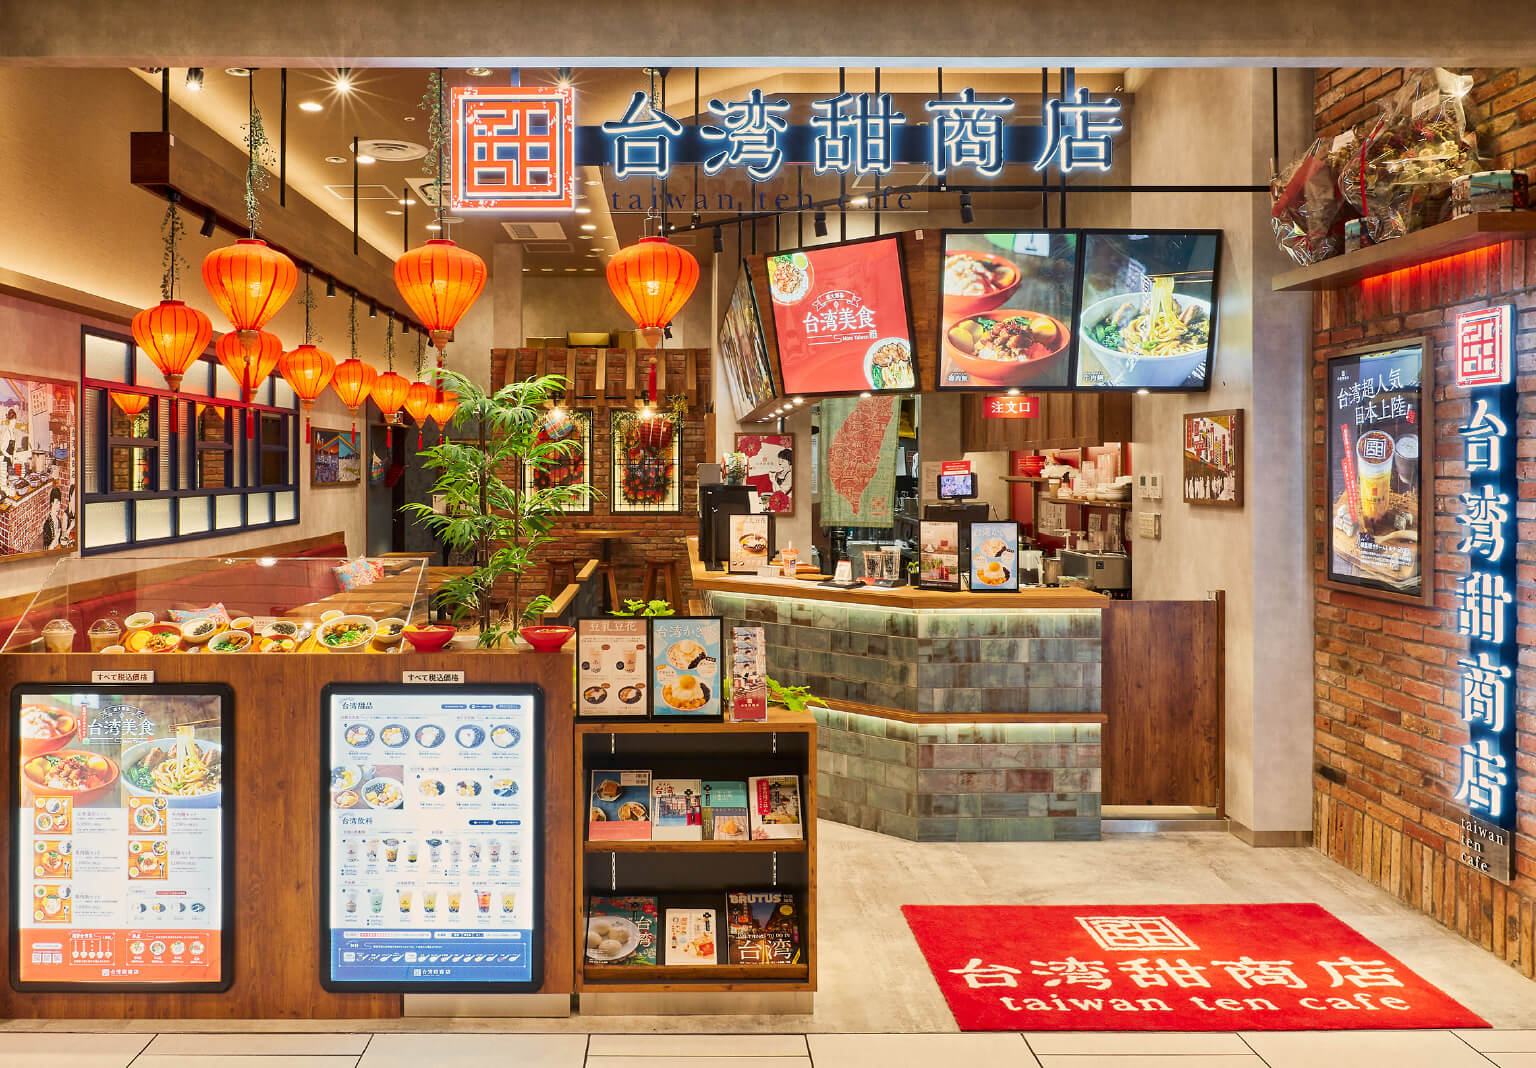 台湾 甜 商店